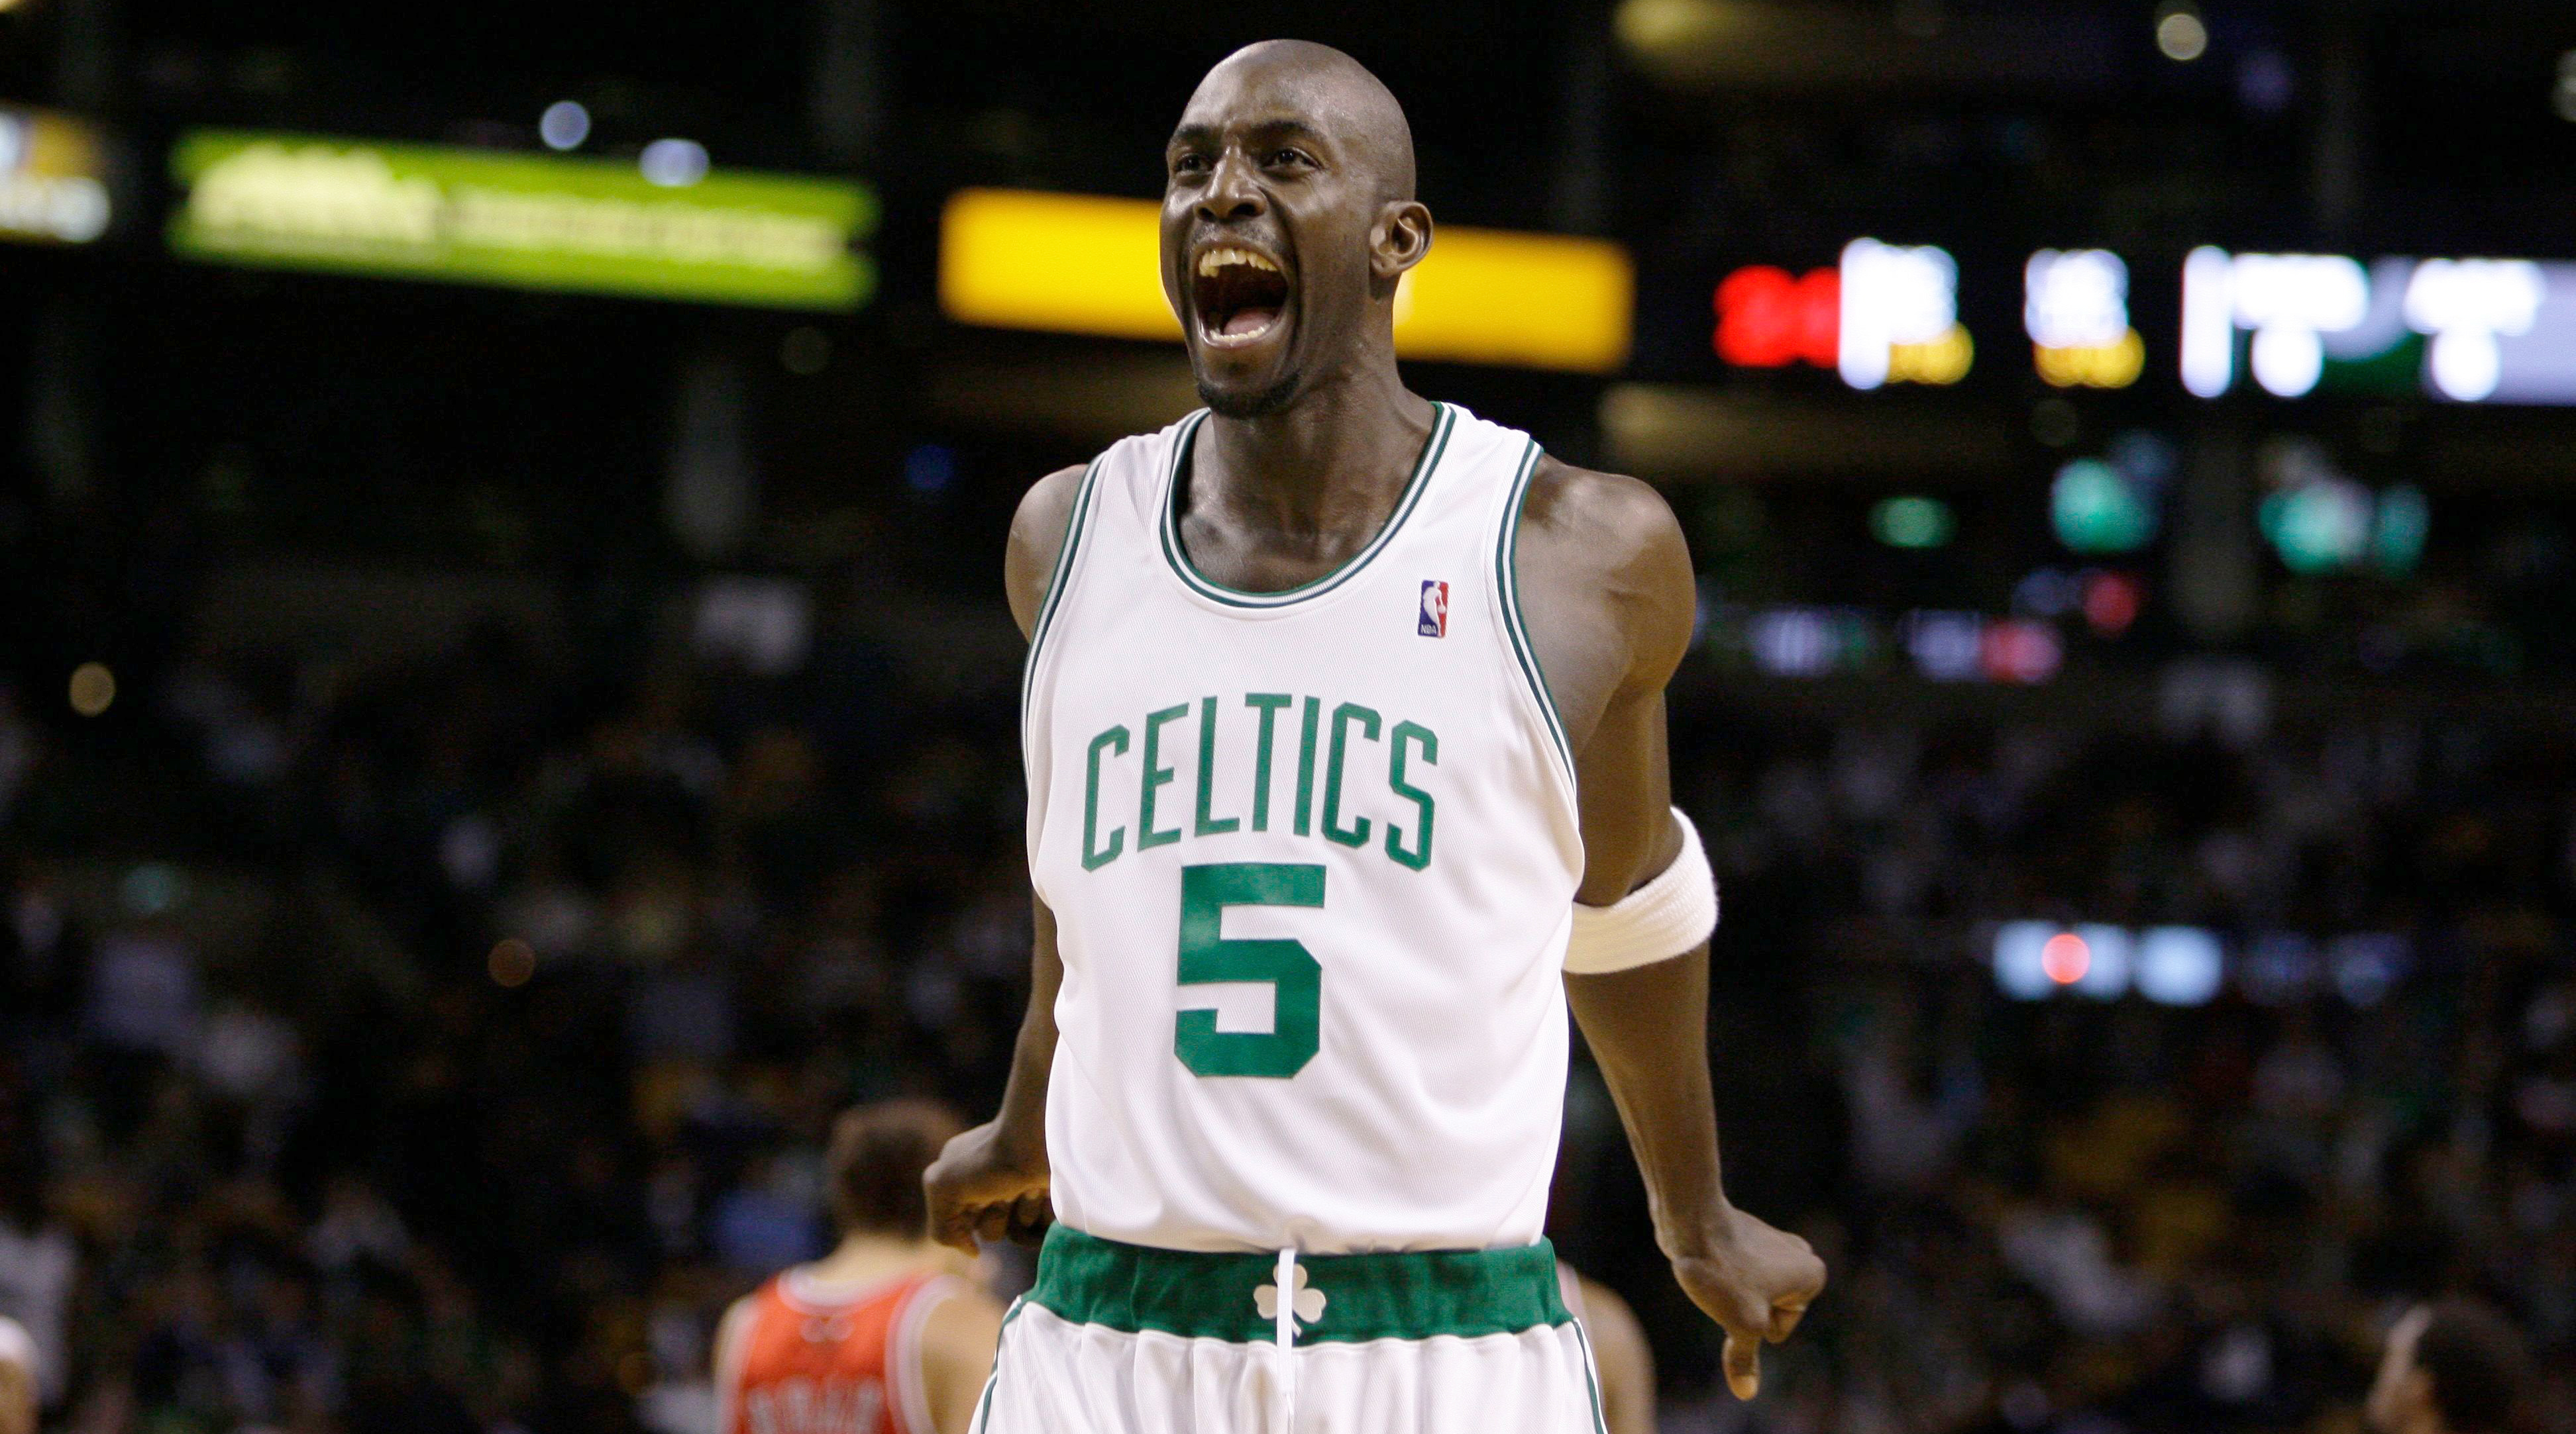 Garnett has jersey retired following Celtics tight loss to red-hot